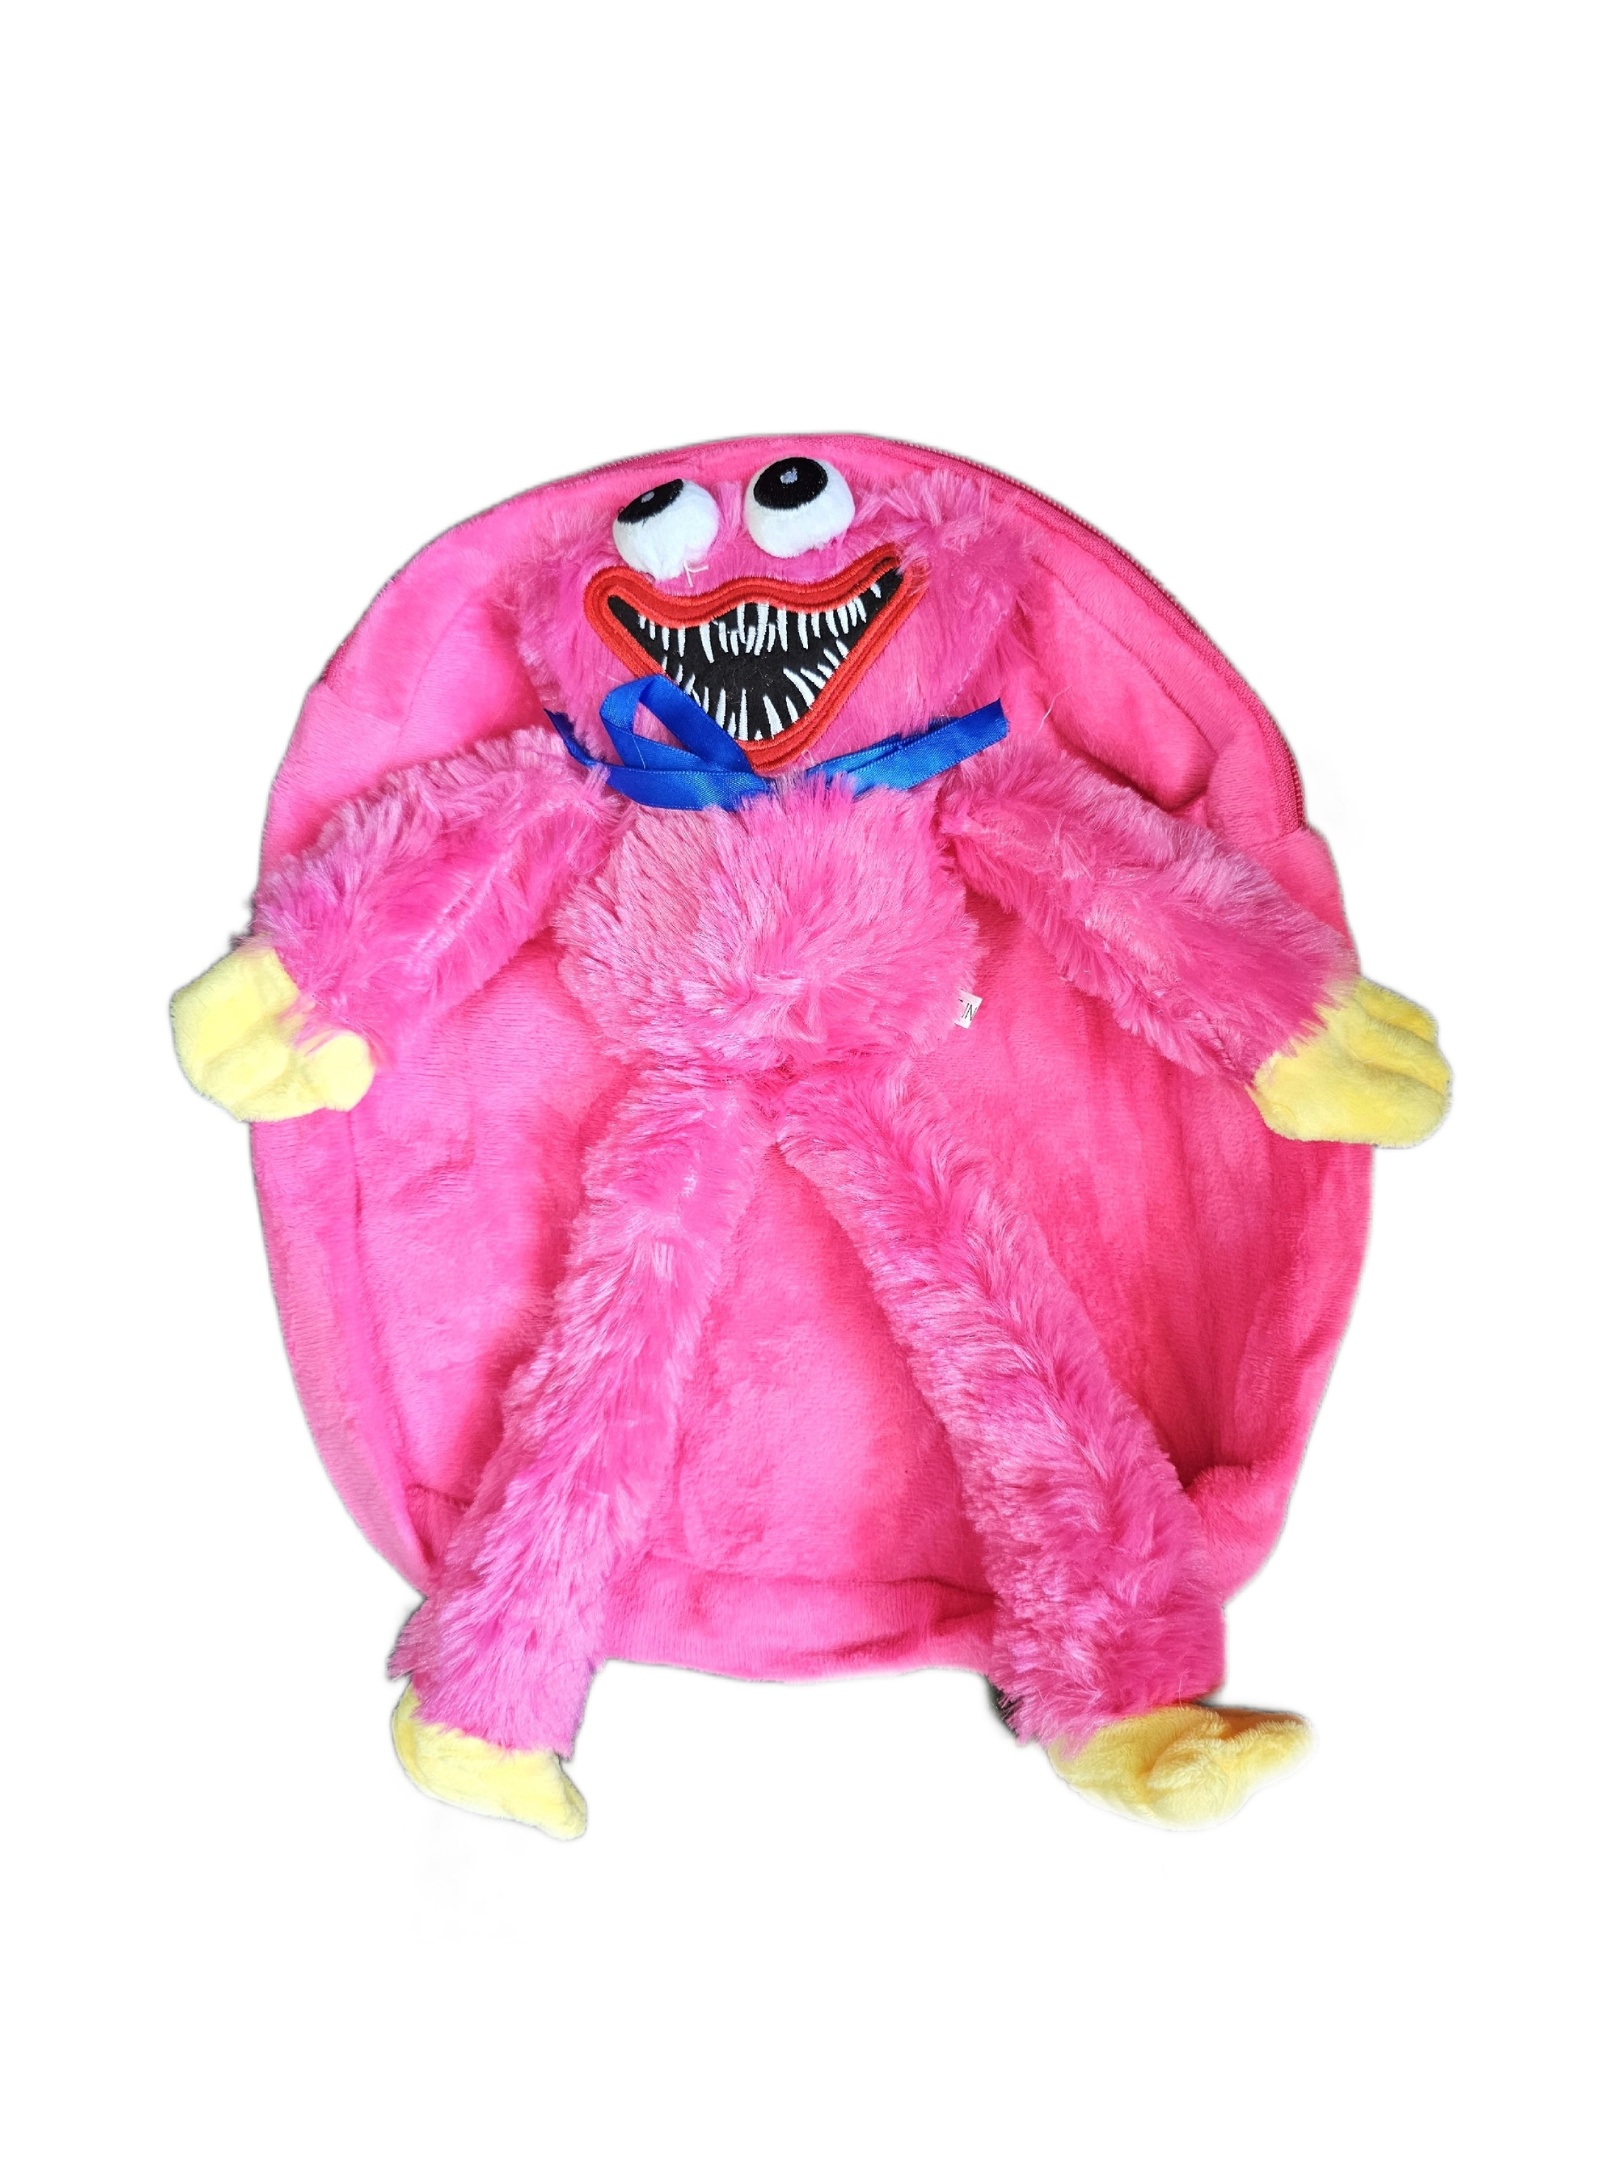 Рюкзак детский плюшевый с игрушкой Кисси Мисси Хаги Ваги, цвет розовый раскраска с хаги ваги фиолетовая